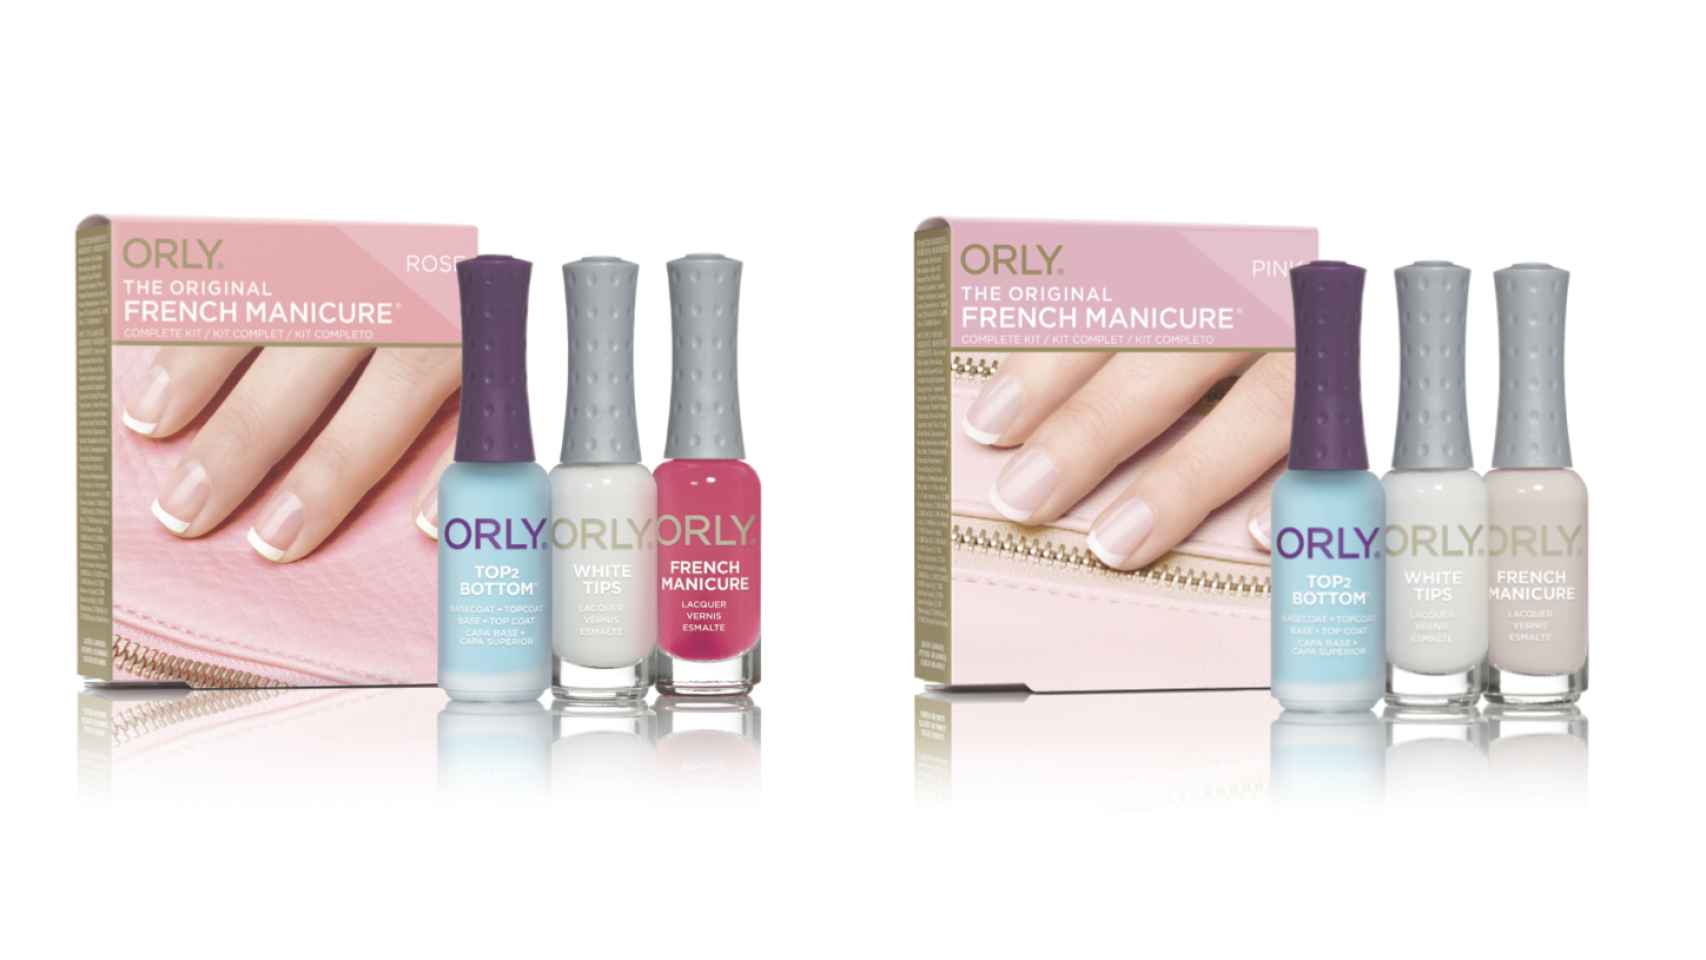 Productos de la marca Orly para la manicura francesa